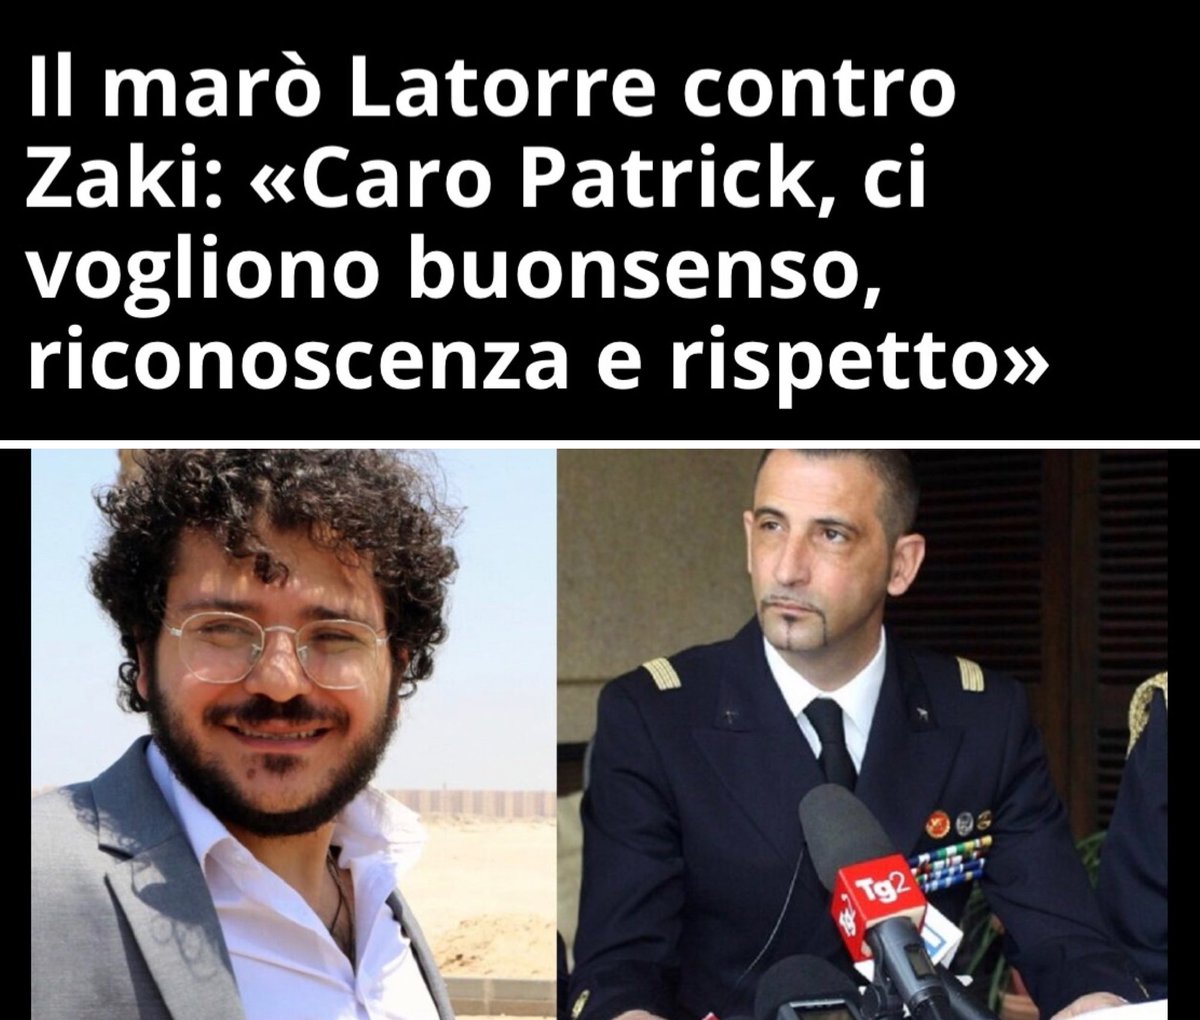 Immaginatevi una persona che ha ucciso brutalmente 2 persone che va a dare lezioni di buonsenso, riconoscenza e rispetto a uno che è stato arrestato per essersi battuto per i diritti umani. Sarebbe assurdo eh.

#Zaki #latorre #Meloni #Salvini #LaRussa #Santanche #PatrickZaki…